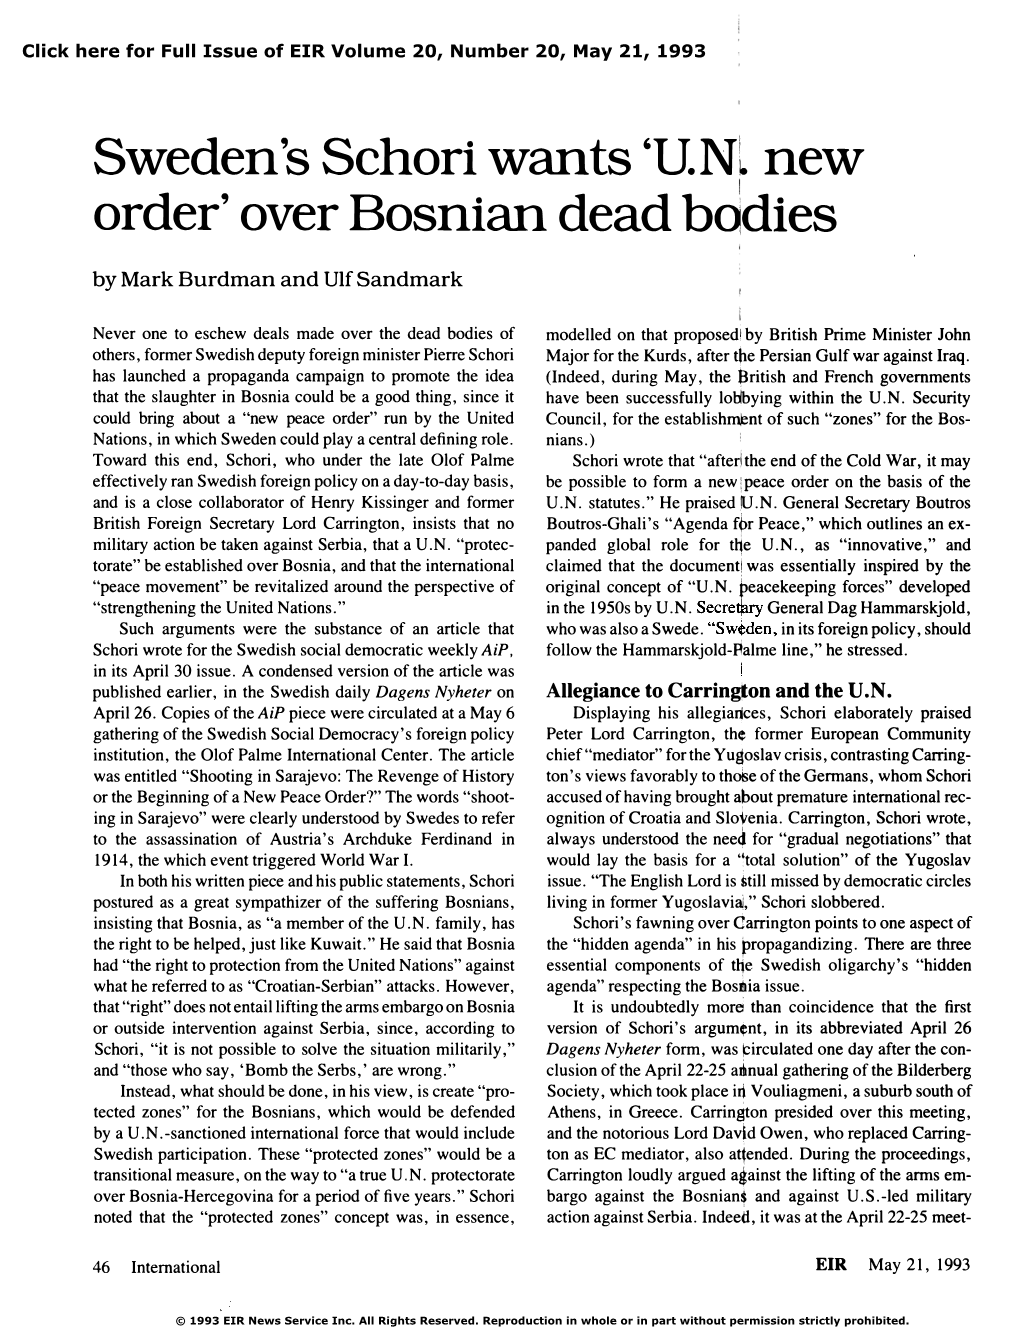 Sweden's Schori Wants 'UN New Order' Over Bosnian Dead Bodies